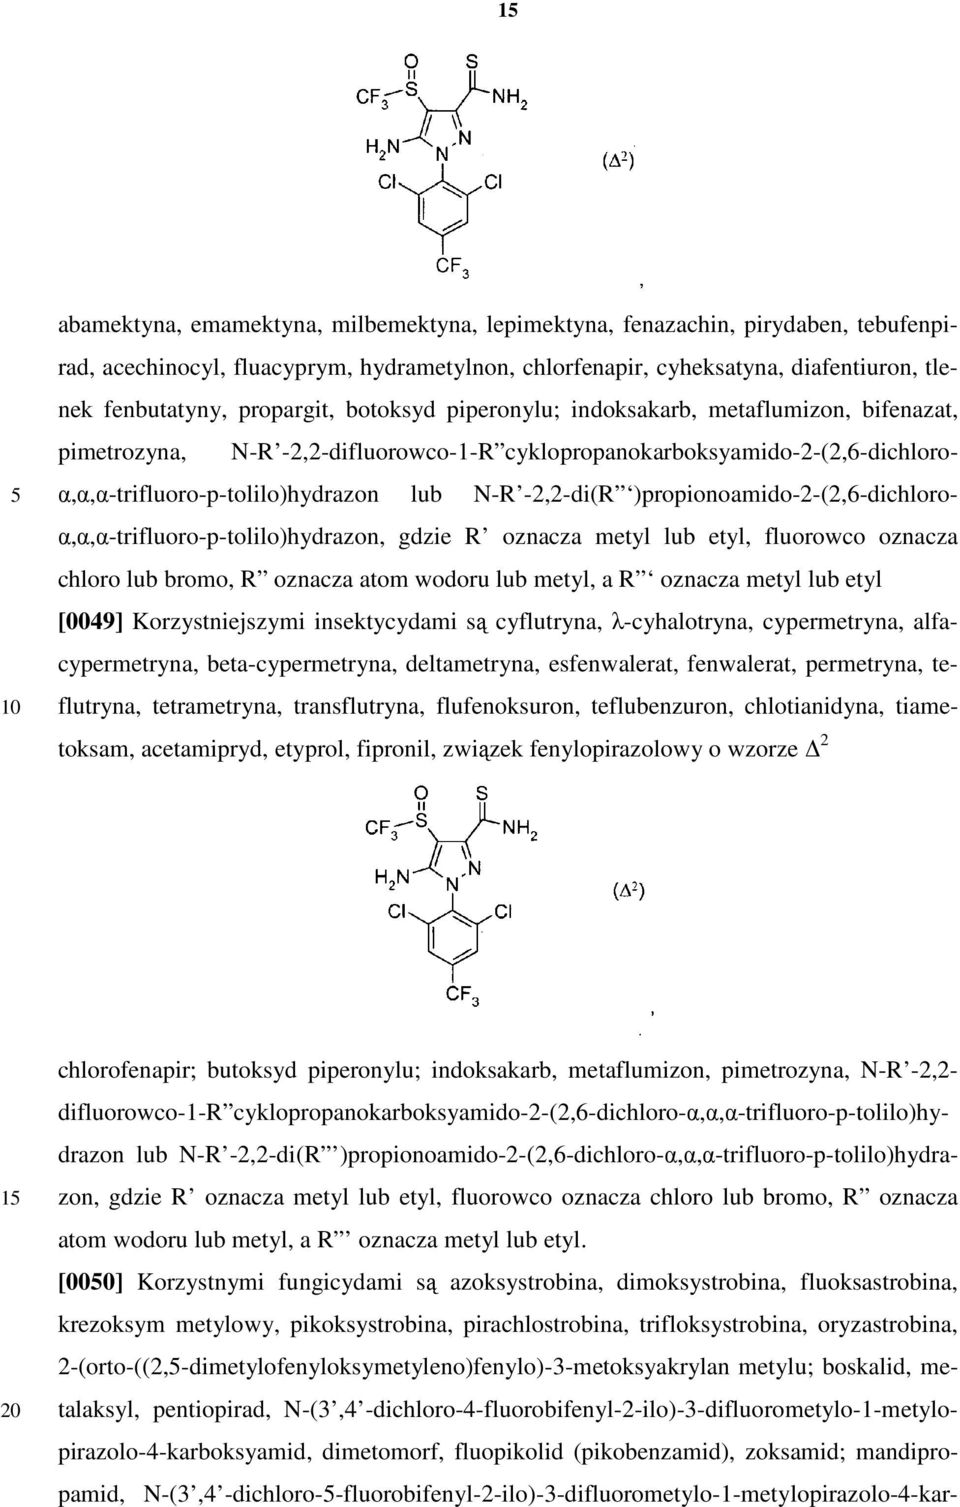 -2,2-di(R )propionoamido-2-(2,6-dichloroα,α,α-trifluoro-p-tolilo)hydrazon, gdzie R oznacza metyl lub etyl, fluorowco oznacza chloro lub bromo, R oznacza atom wodoru lub metyl, a R oznacza metyl lub